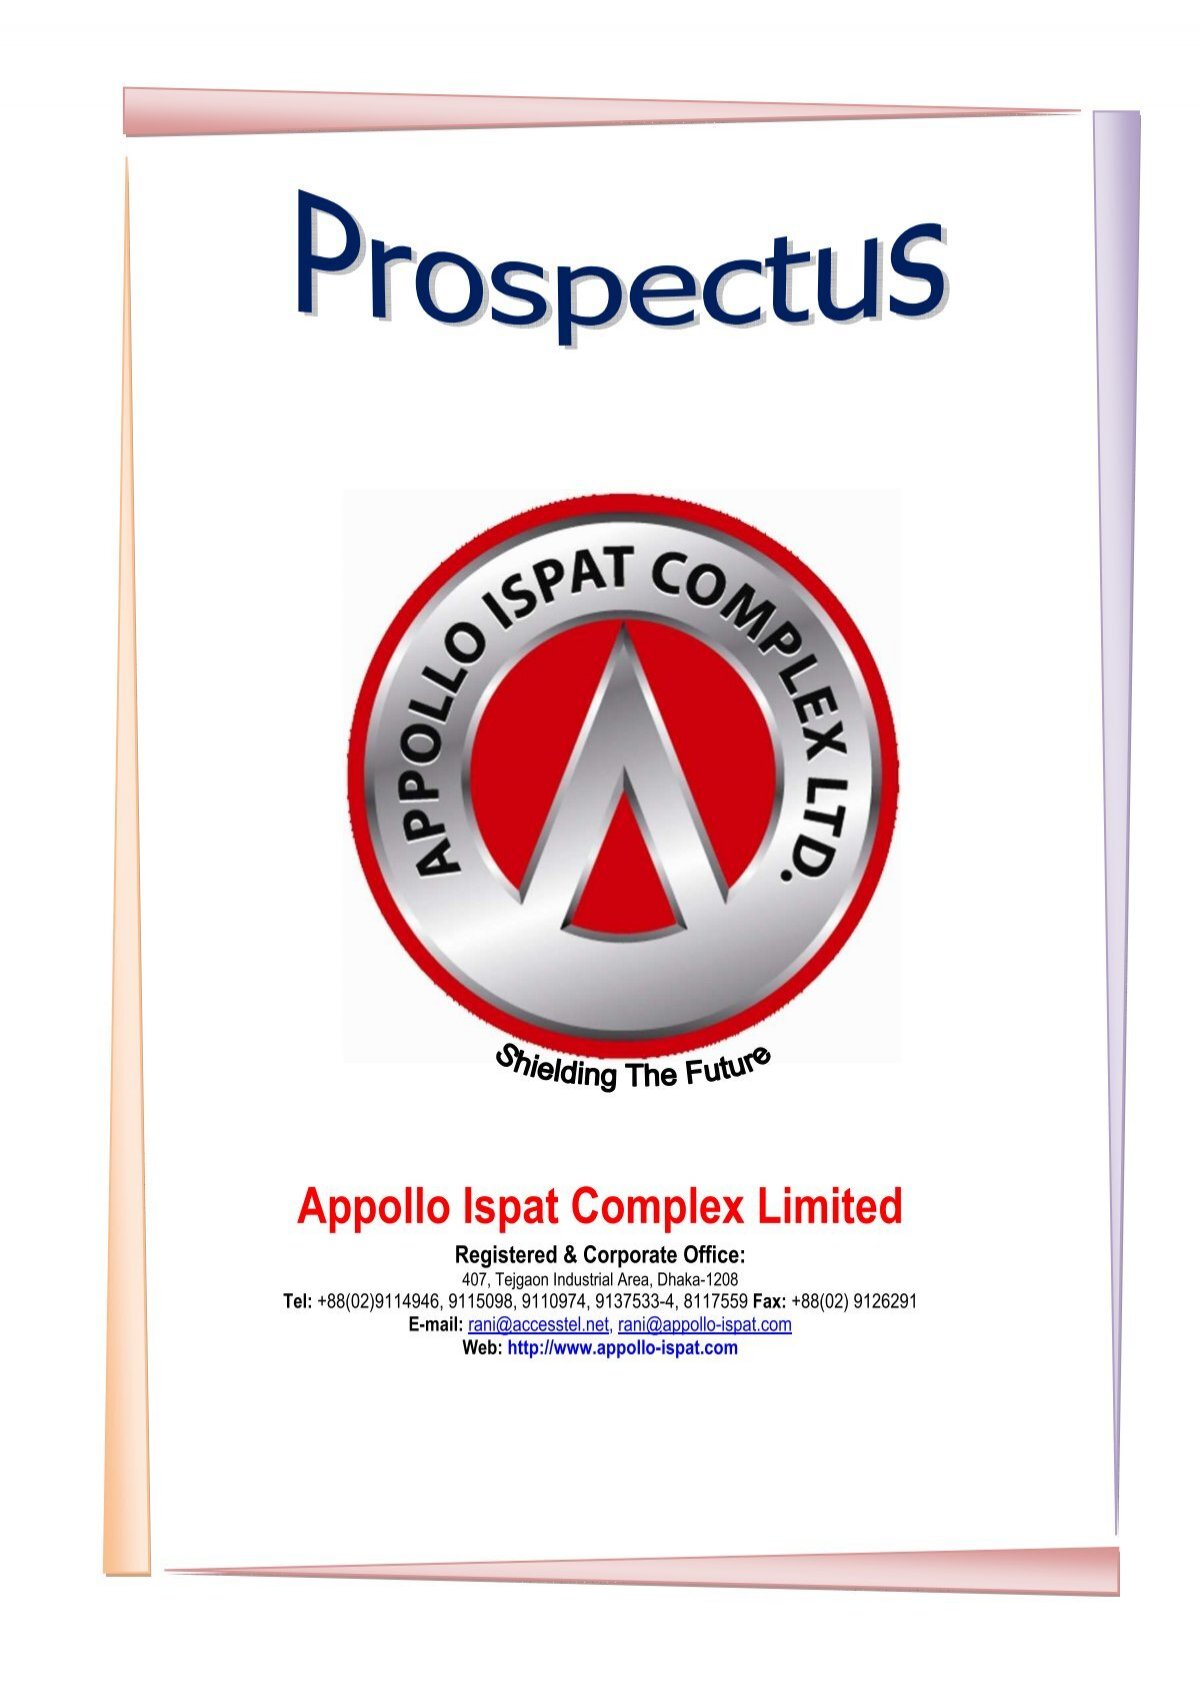 Appollo Ispat Complex Limited là một công ty sản xuất thép chất lượng với quy mô lớn, cơ sở hạ tầng tiên tiến và đội ngũ nhân viên chuyên nghiệp. Hãy xem hình ảnh để biết thêm chi tiết về sản phẩm của họ!